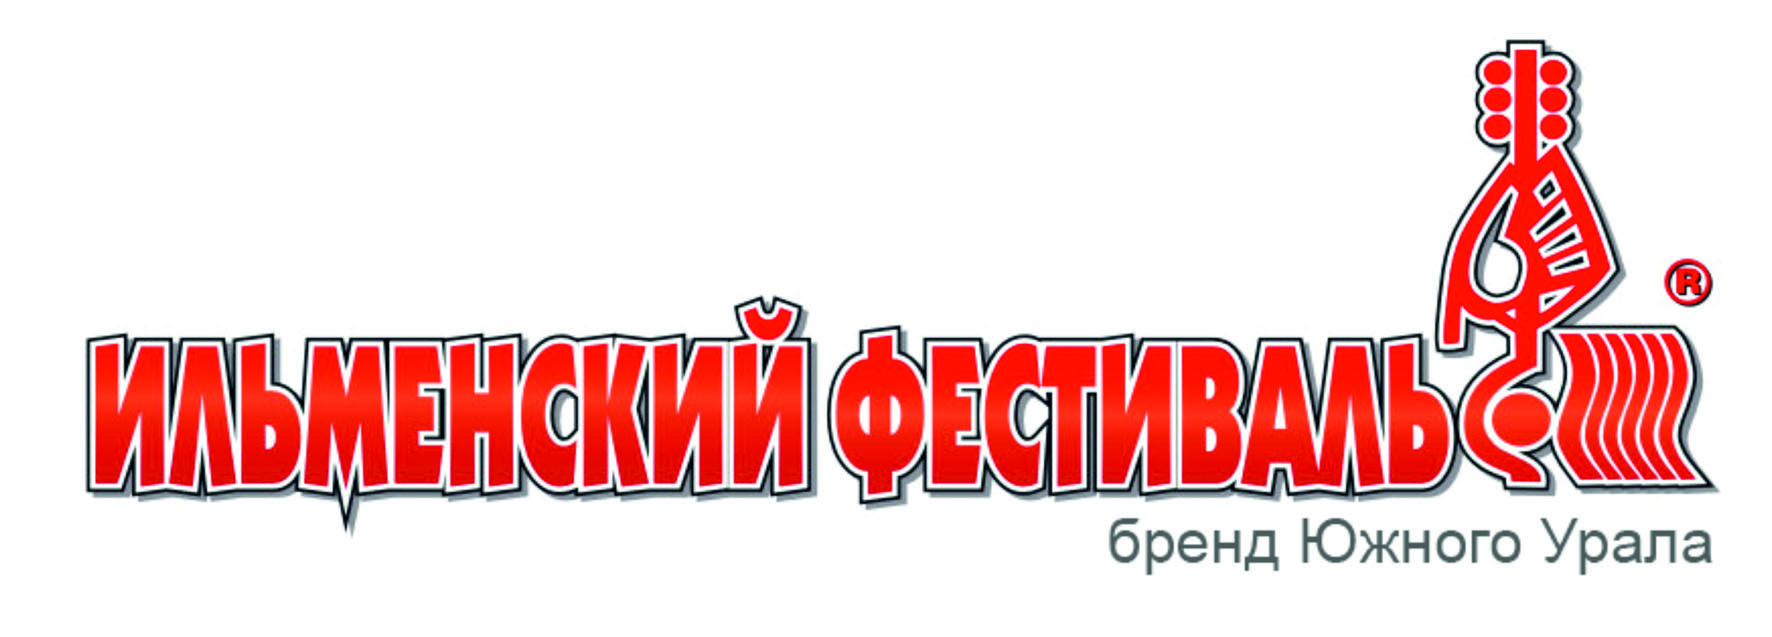 41-й Всероссийский Ильменский фестиваль